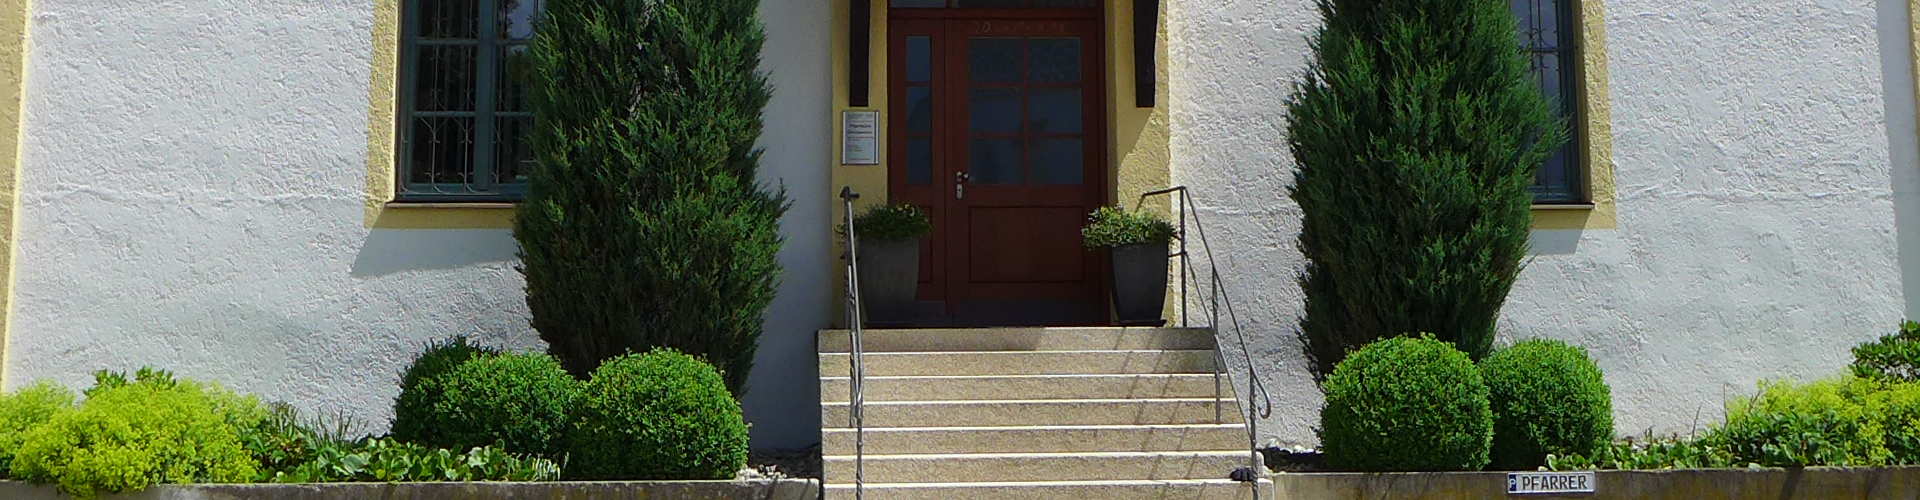 Eingang zum Kath. Pfarrhaus in Velden